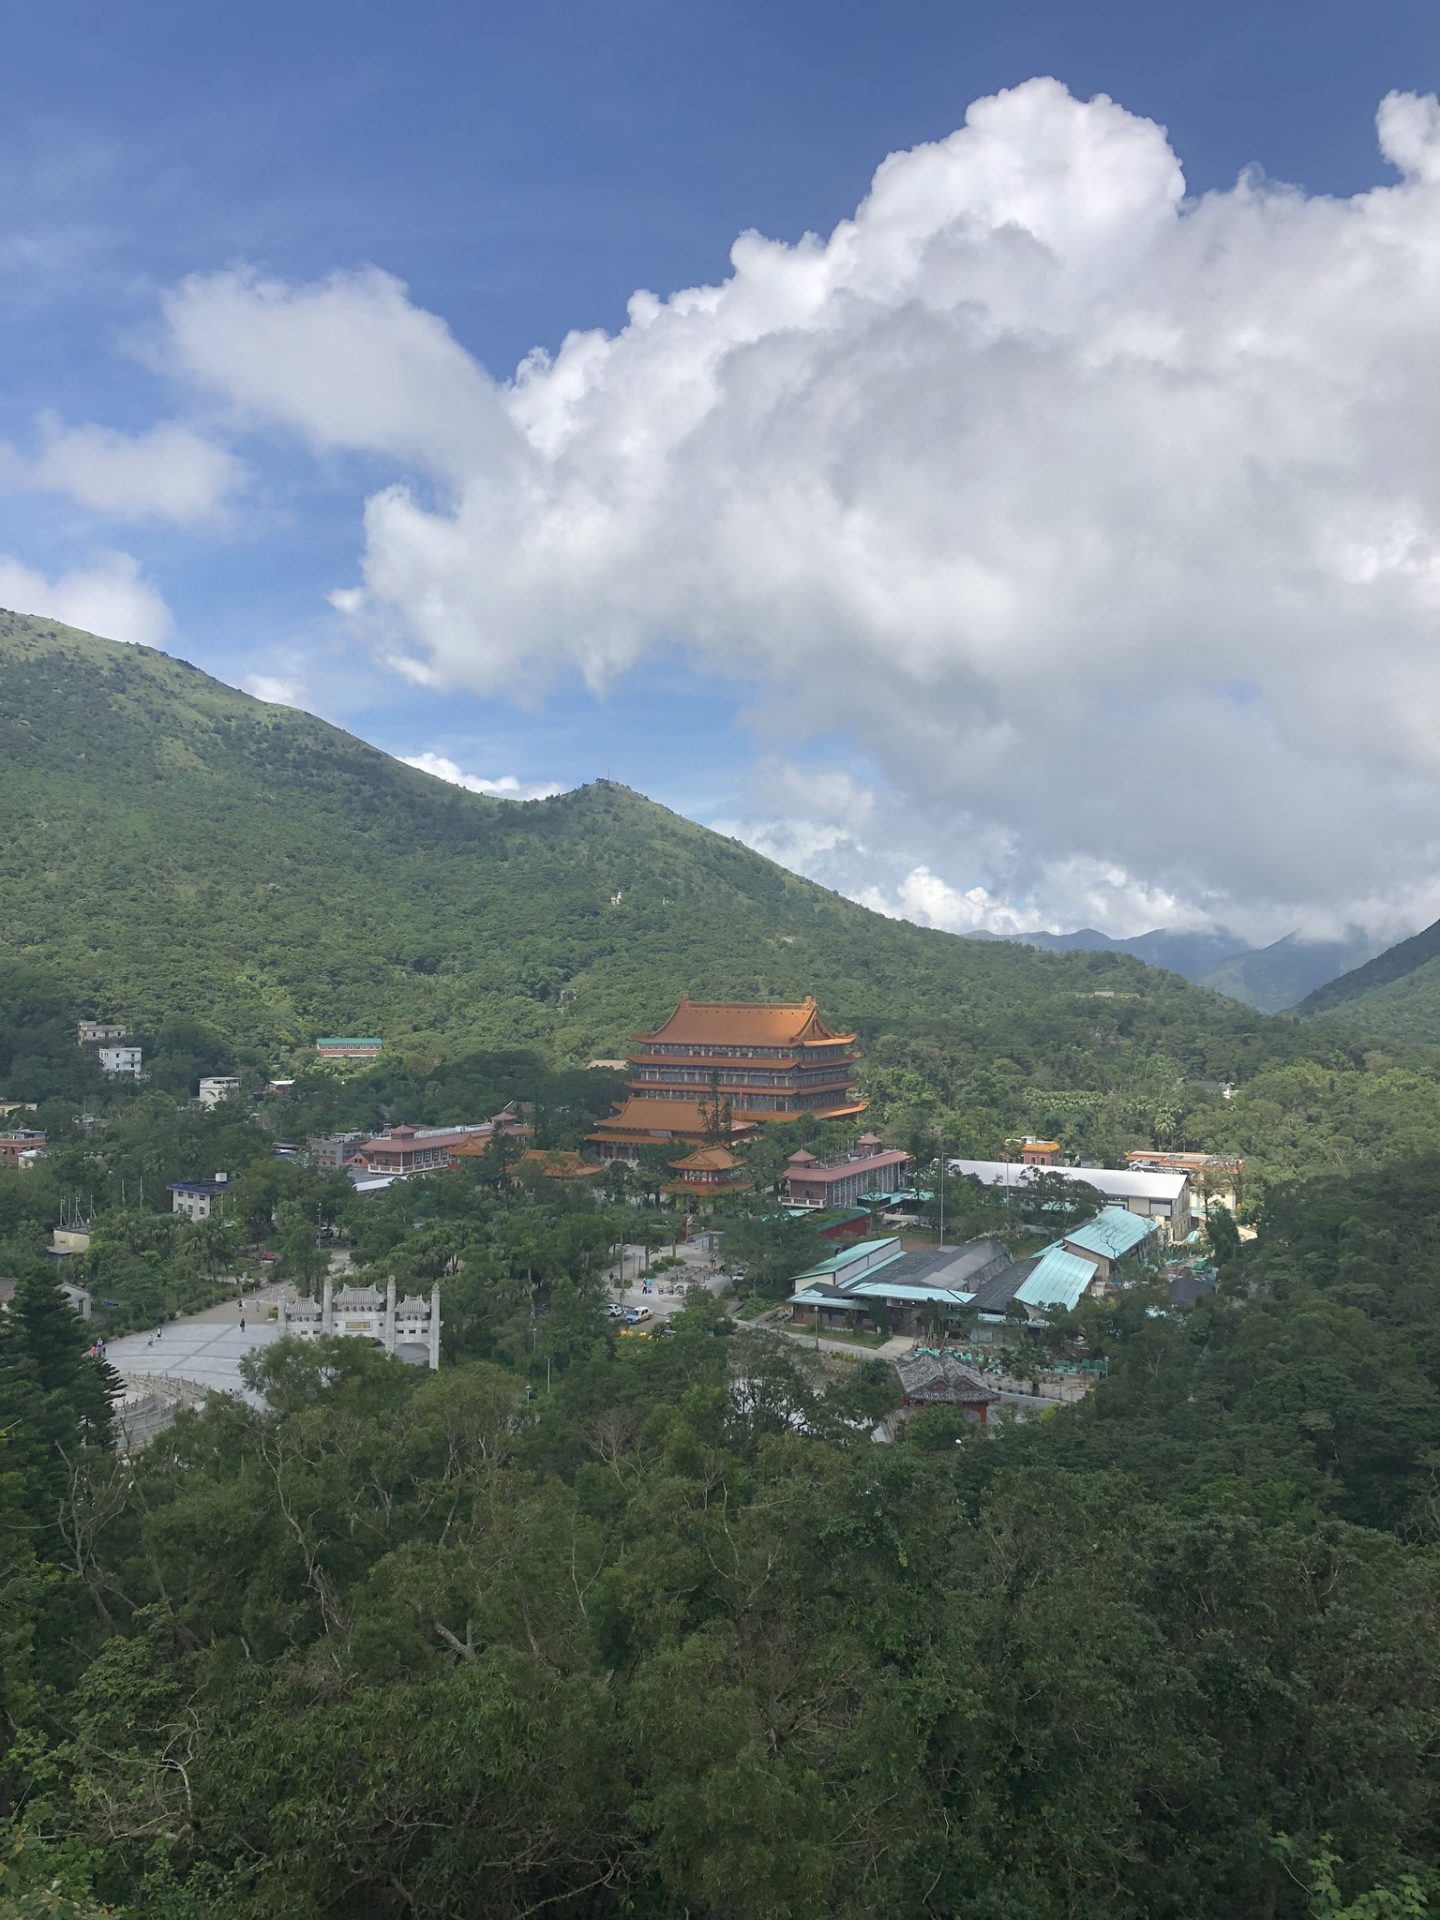 Views from Mount Muk Yue, Lantau Island